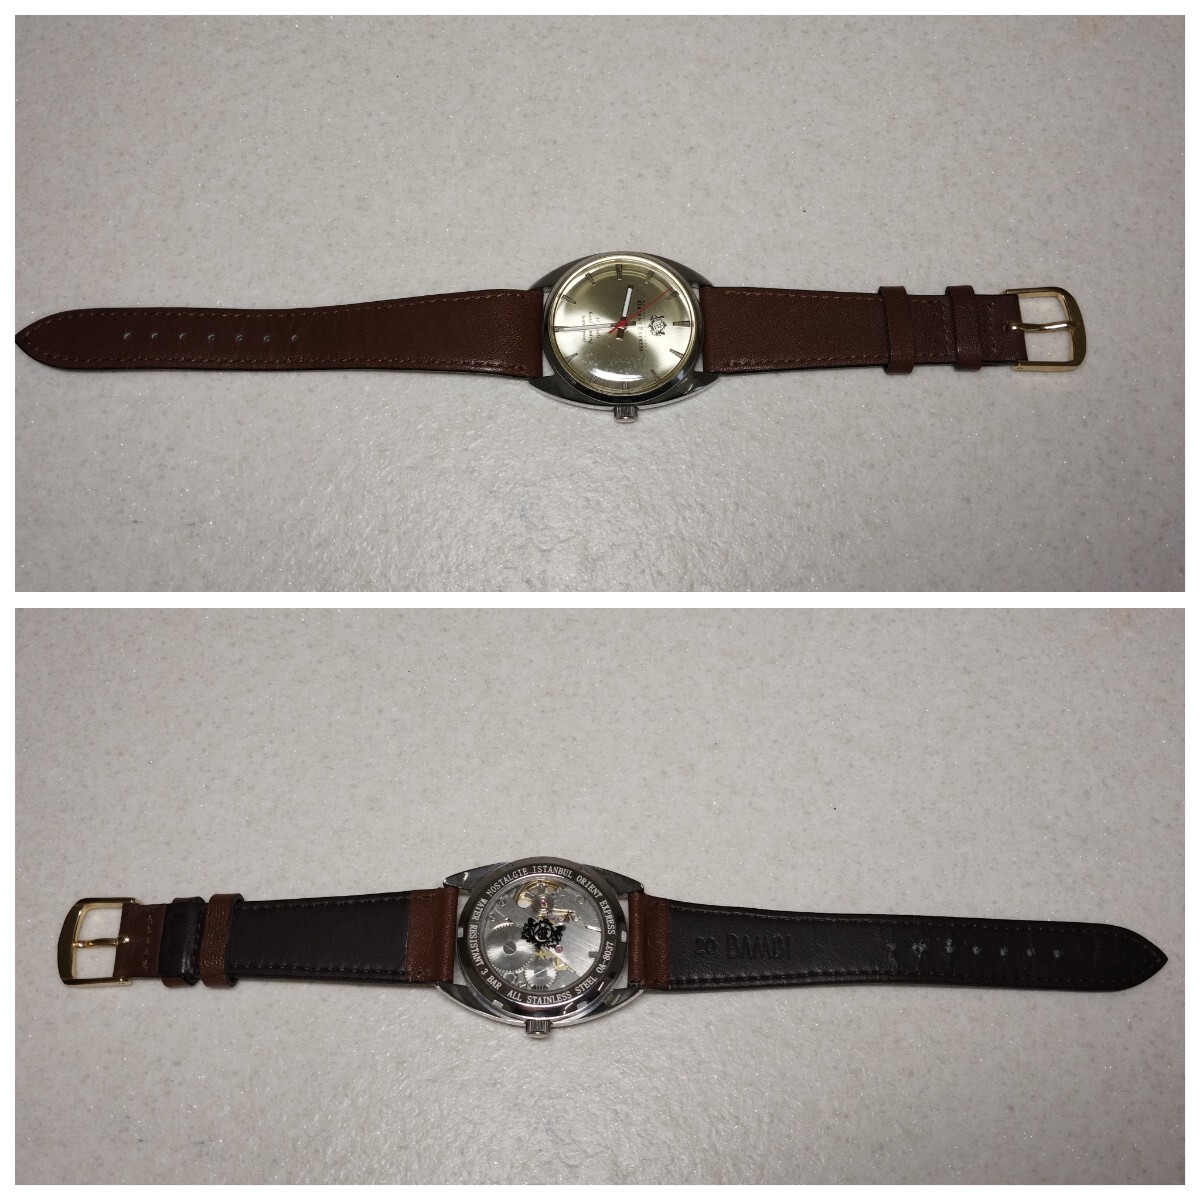 腕時計 手巻 NOSTALGIE ISTANBUL ORIENT EXPRESS オリエントエクスプレス OA-8037 アナログ 時計 小物 雑貨 可動品 民間整理品bの画像4